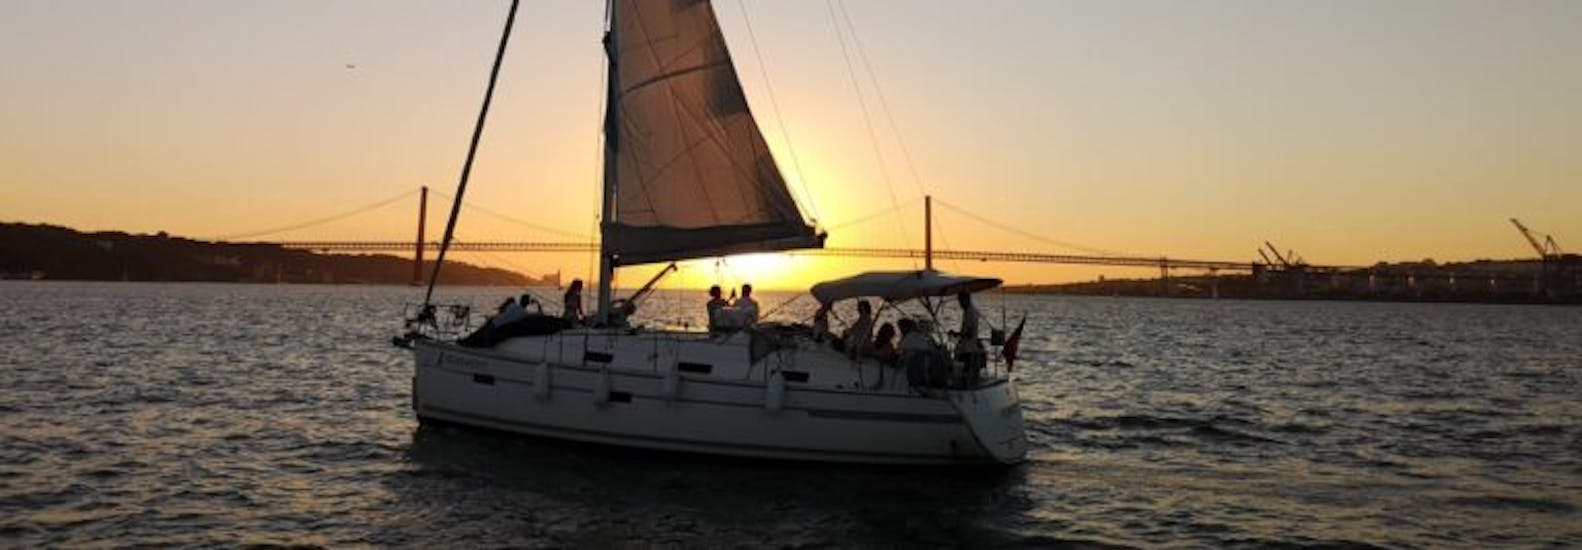 Gita privata in barca a vela da Doca de Belém a Tago al tramonto e visita turistica.